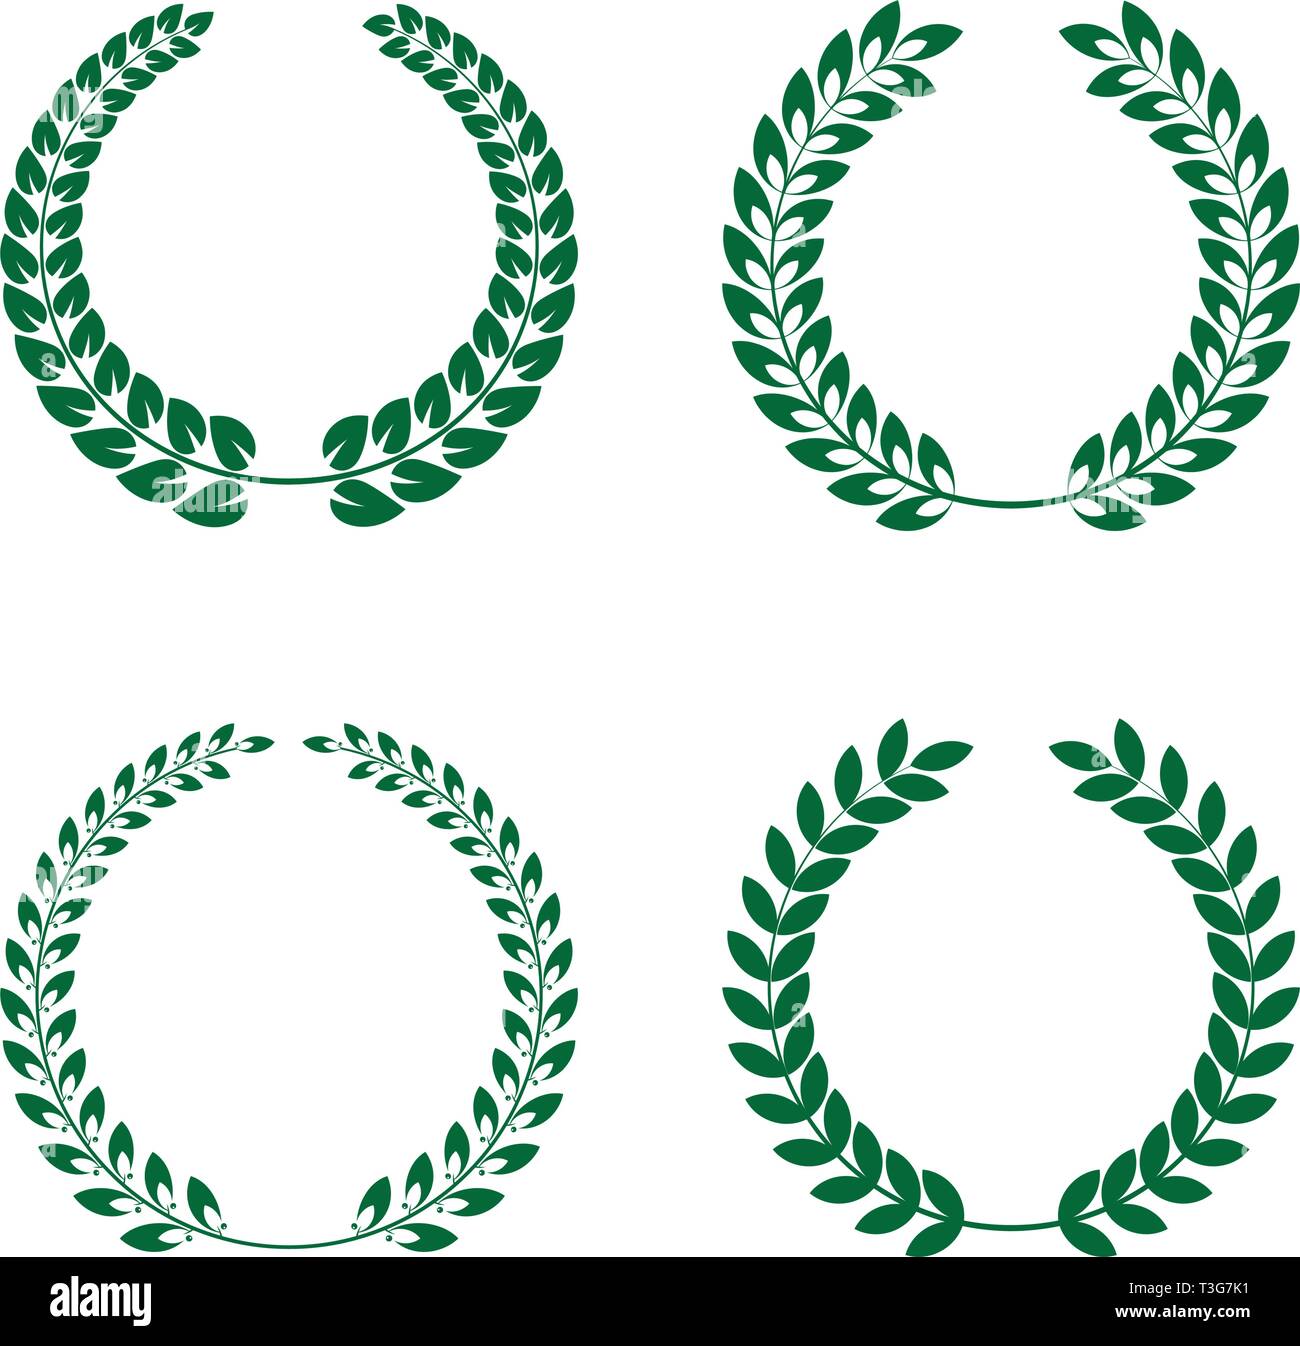 Vier verschiedene grüne Laurel Kränze auf weißem Hintergrund Vektor-illustration isoliert Stock Vektor